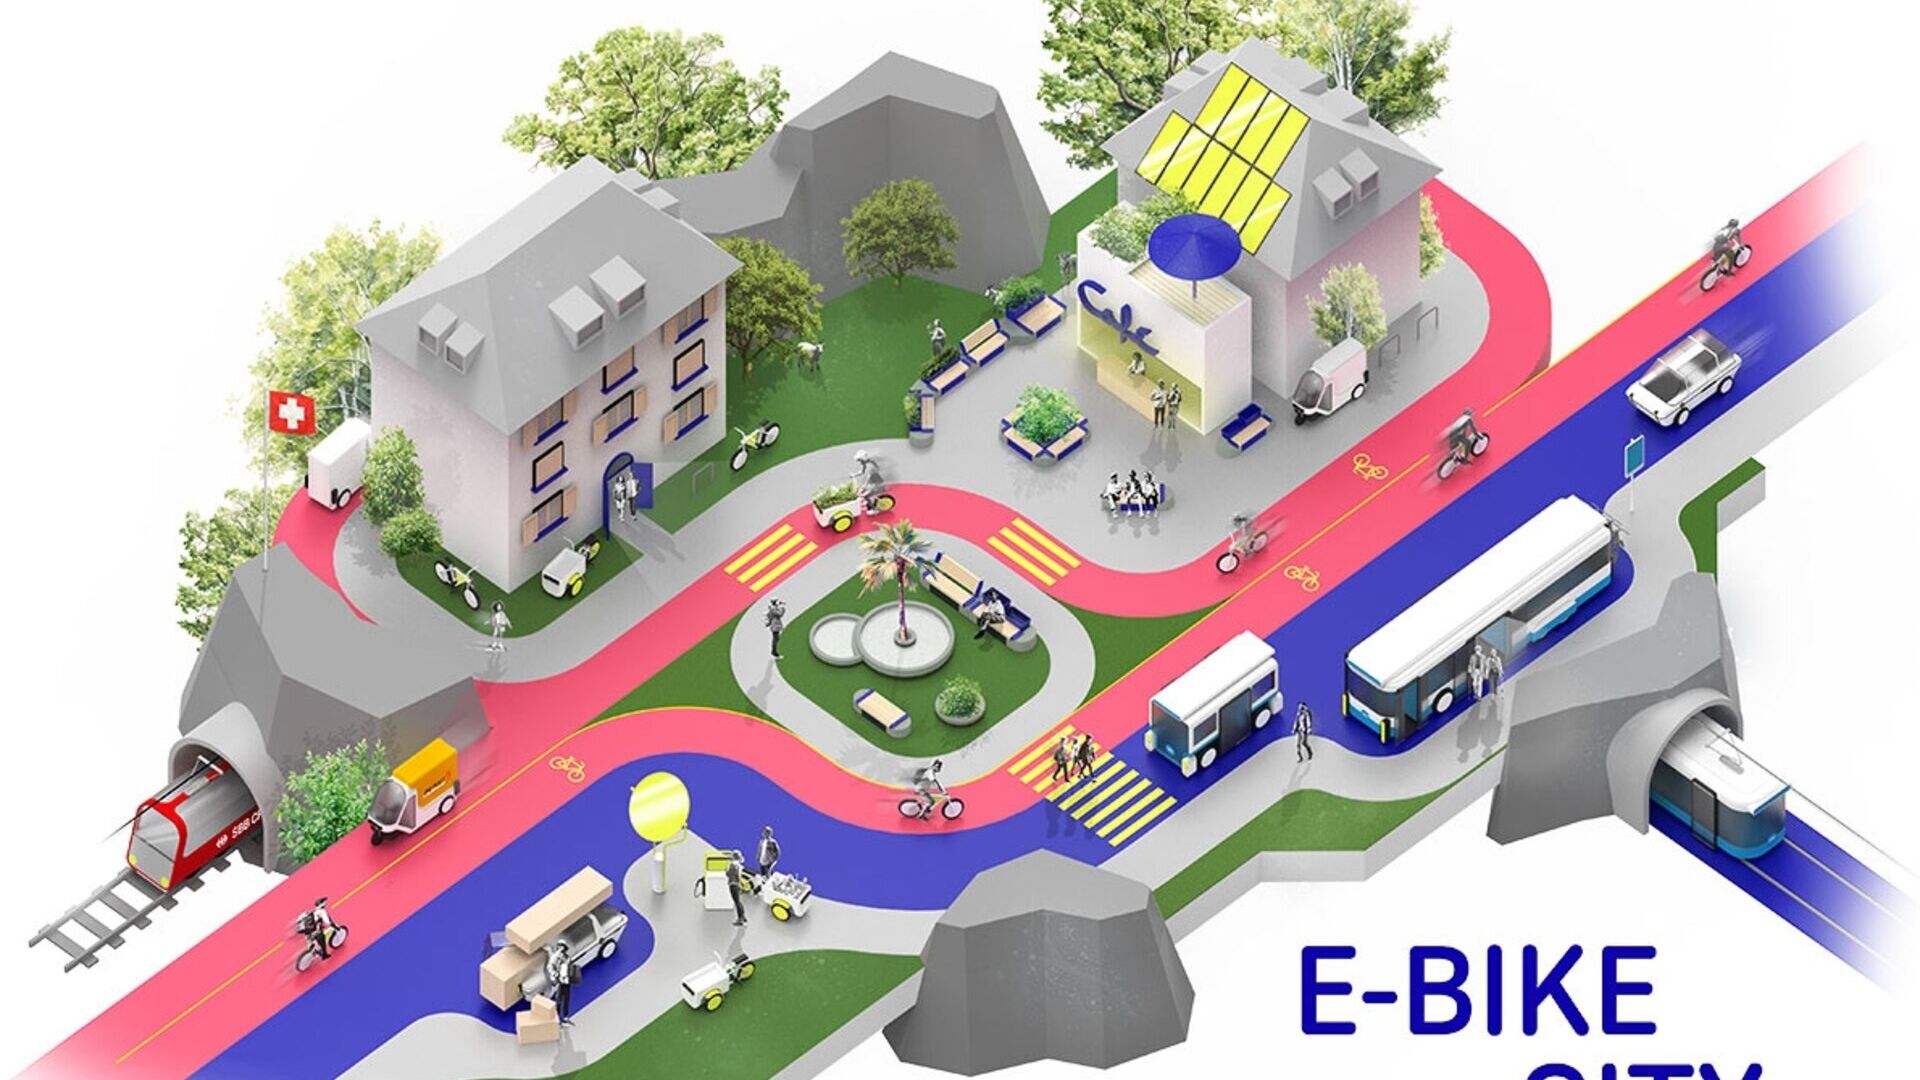 Sepeda listrik: contoh bergaya E-Bike City dengan jalan satu arah untuk mobil dan jalan dua arah untuk sepeda